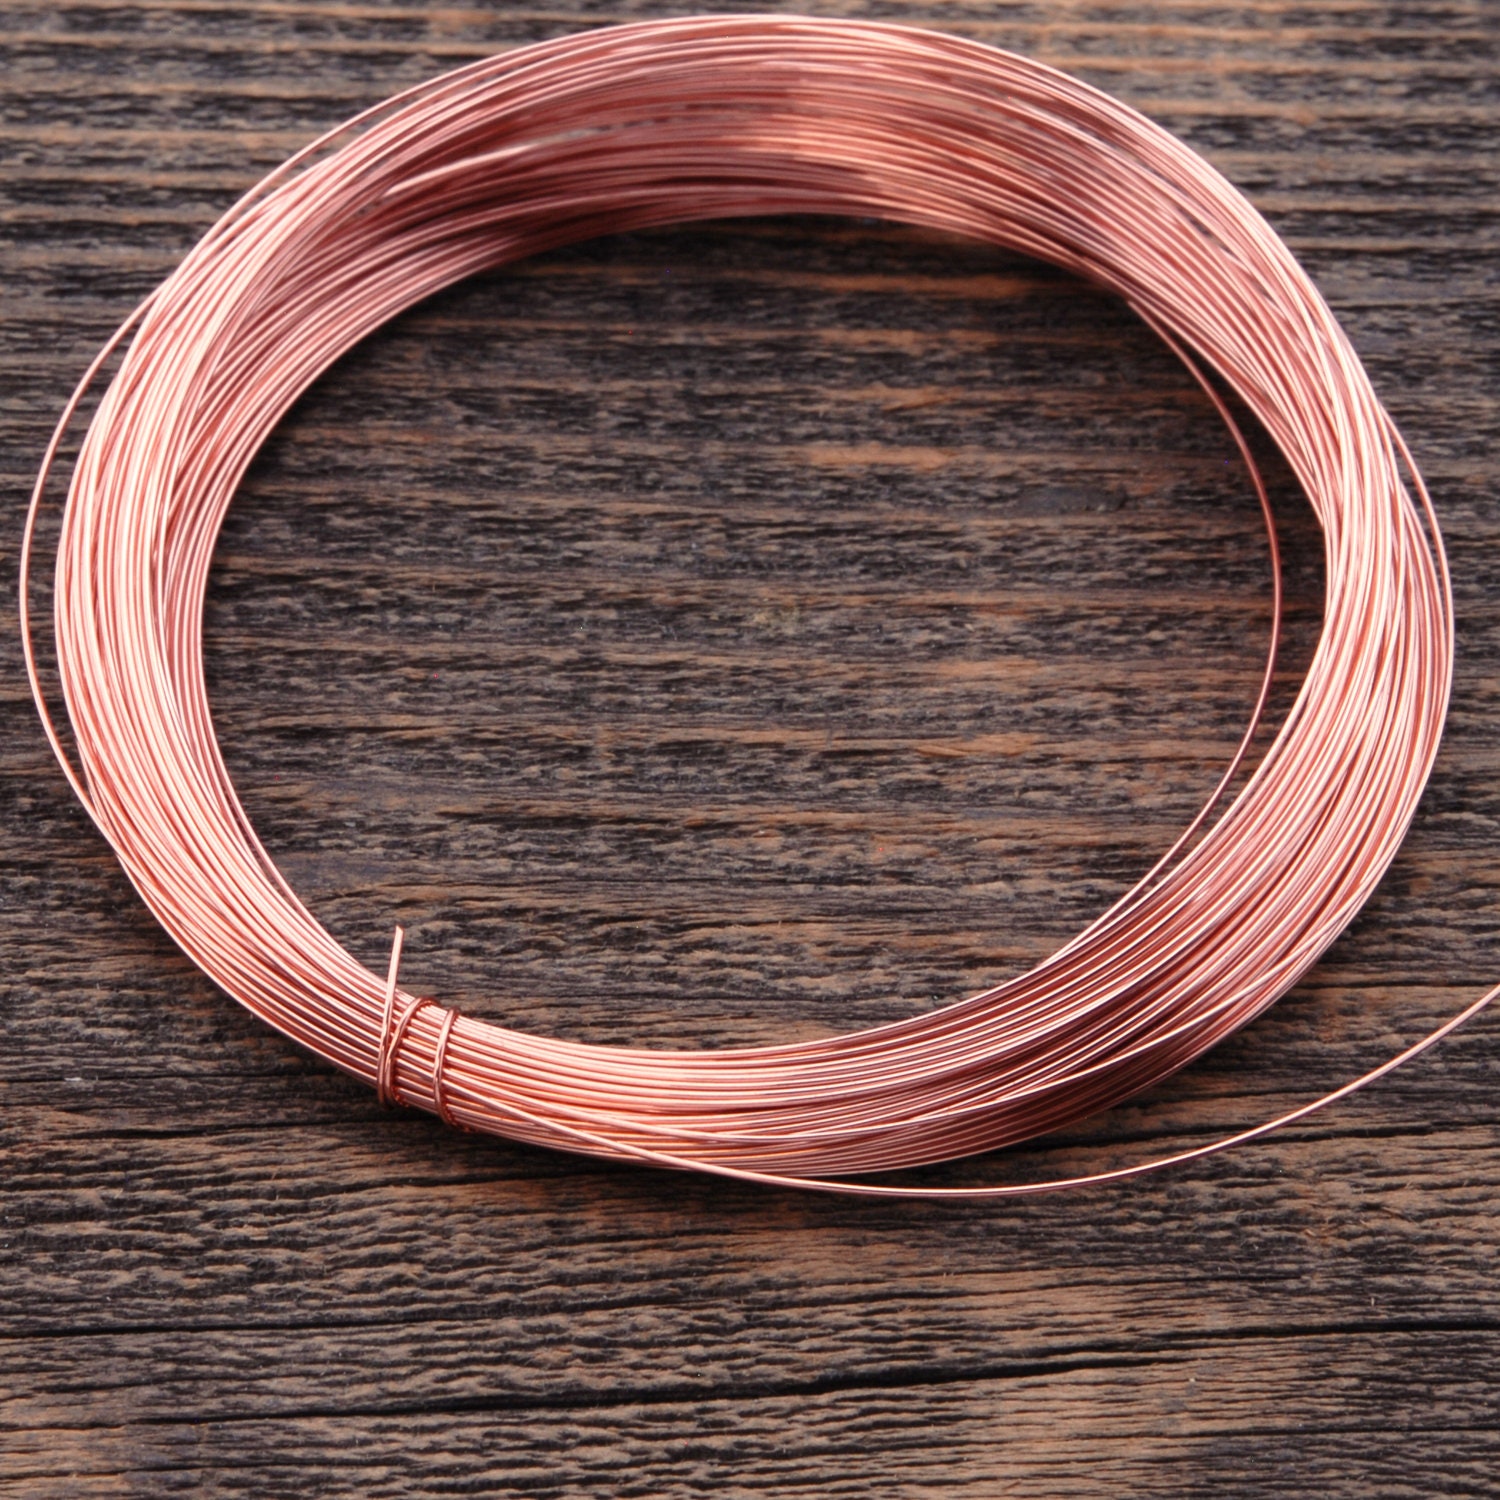 26 Gauge Round Half Hard Copper Wire: Jewelry Making Supplies